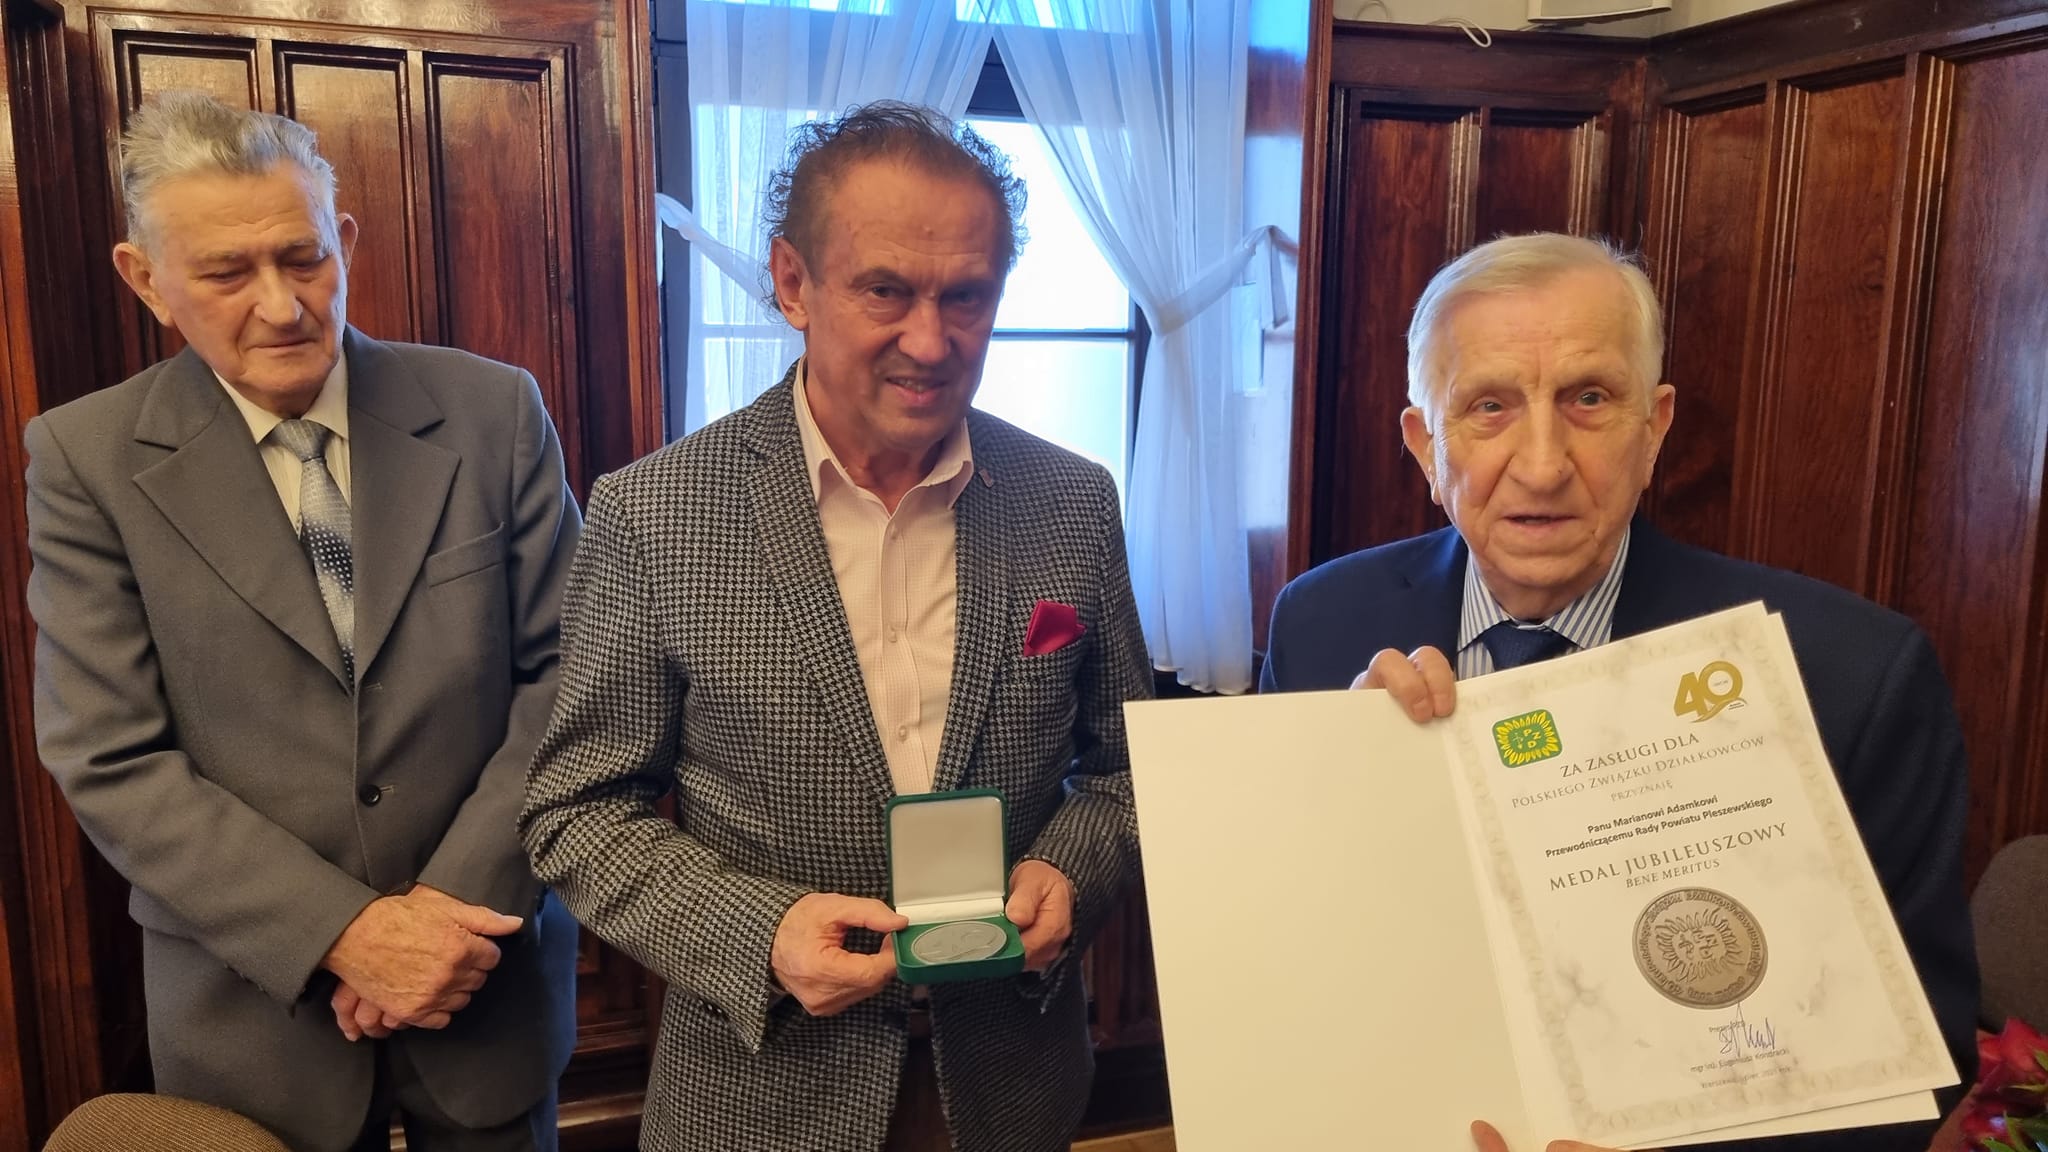 Wręczenie Medalu Jubileuszowego "Bene Meritus" za zasługi dla Polskiego Związku Działkowców wieloletniemu burmistrzowi Marianowi Adamkowi - obecnemu przewodniczącemu Rady Powiatu Pleszewskiego